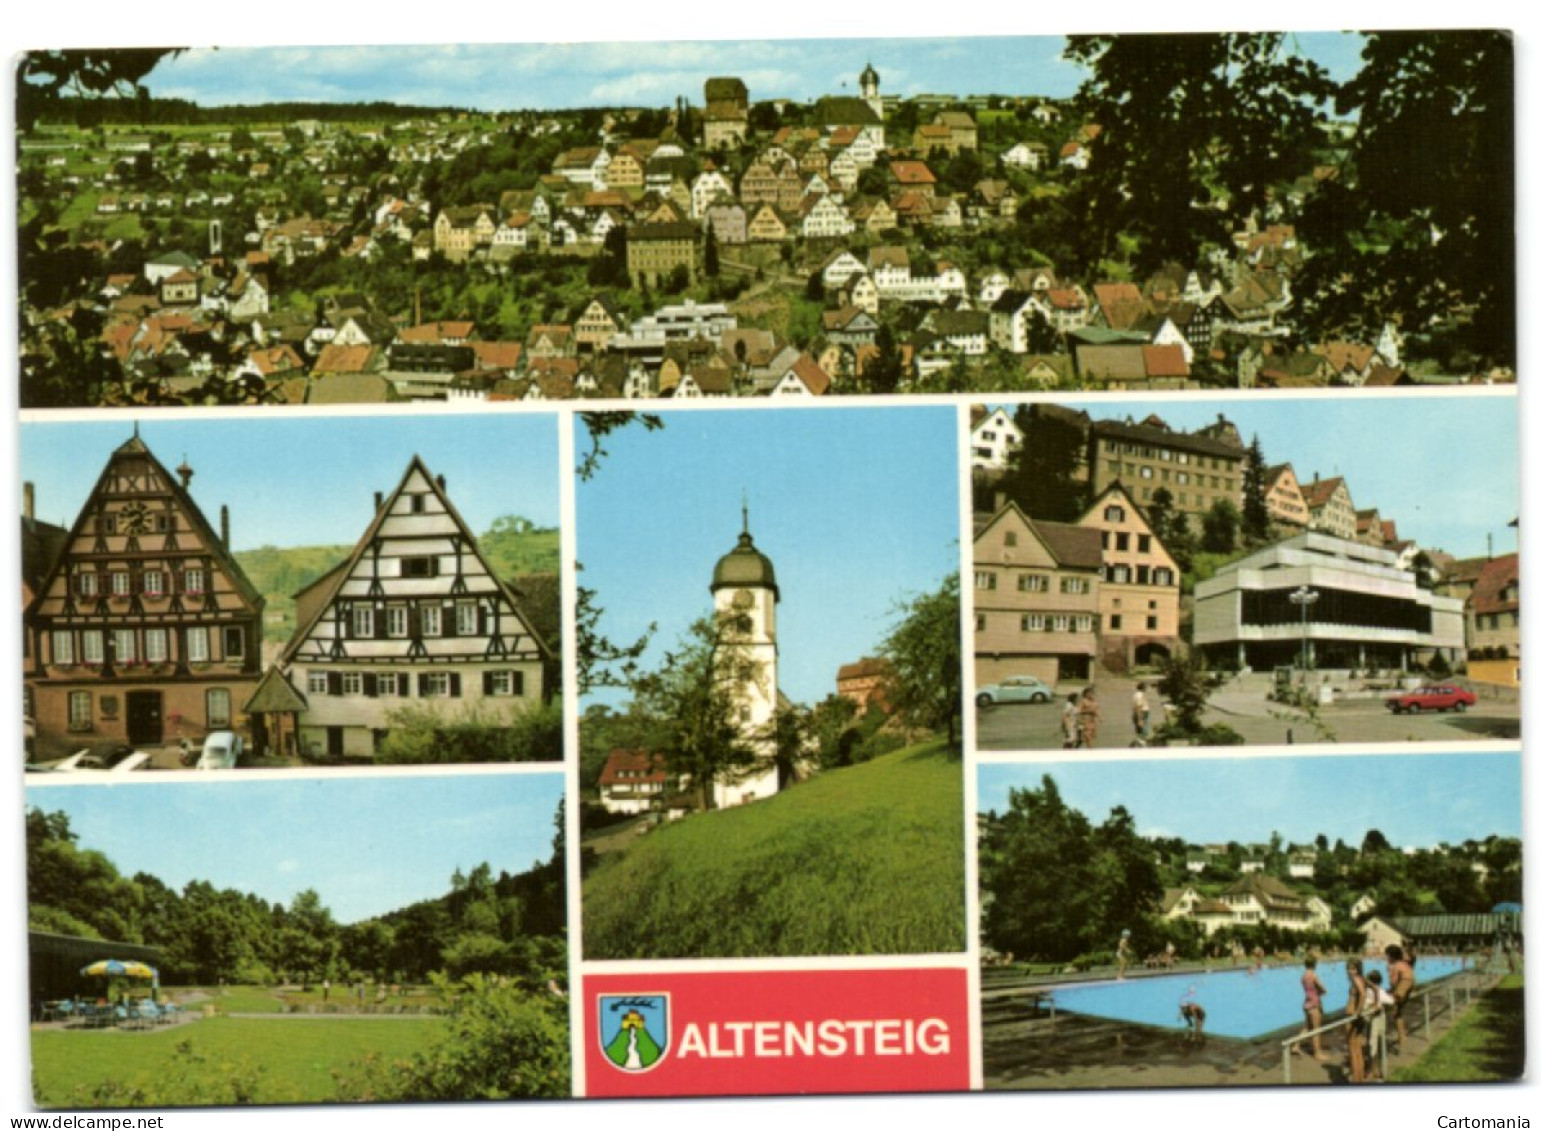 Altensteig - Altensteig